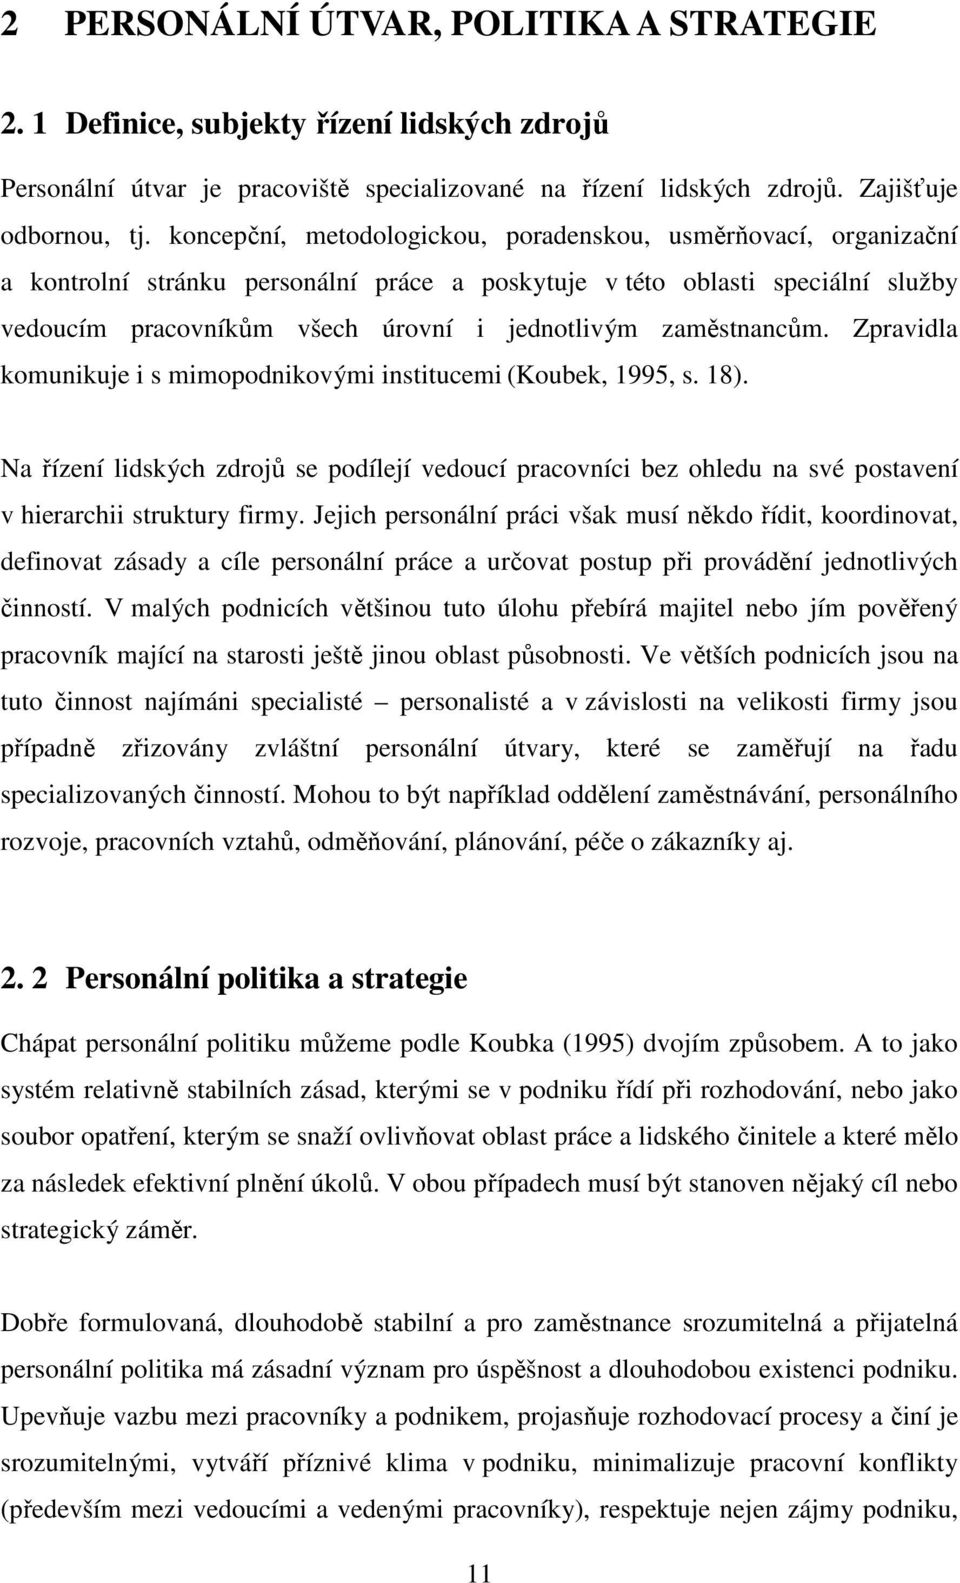 zaměstnancům. Zpravidla komunikuje i s mimopodnikovými institucemi (Koubek, 1995, s. 18).